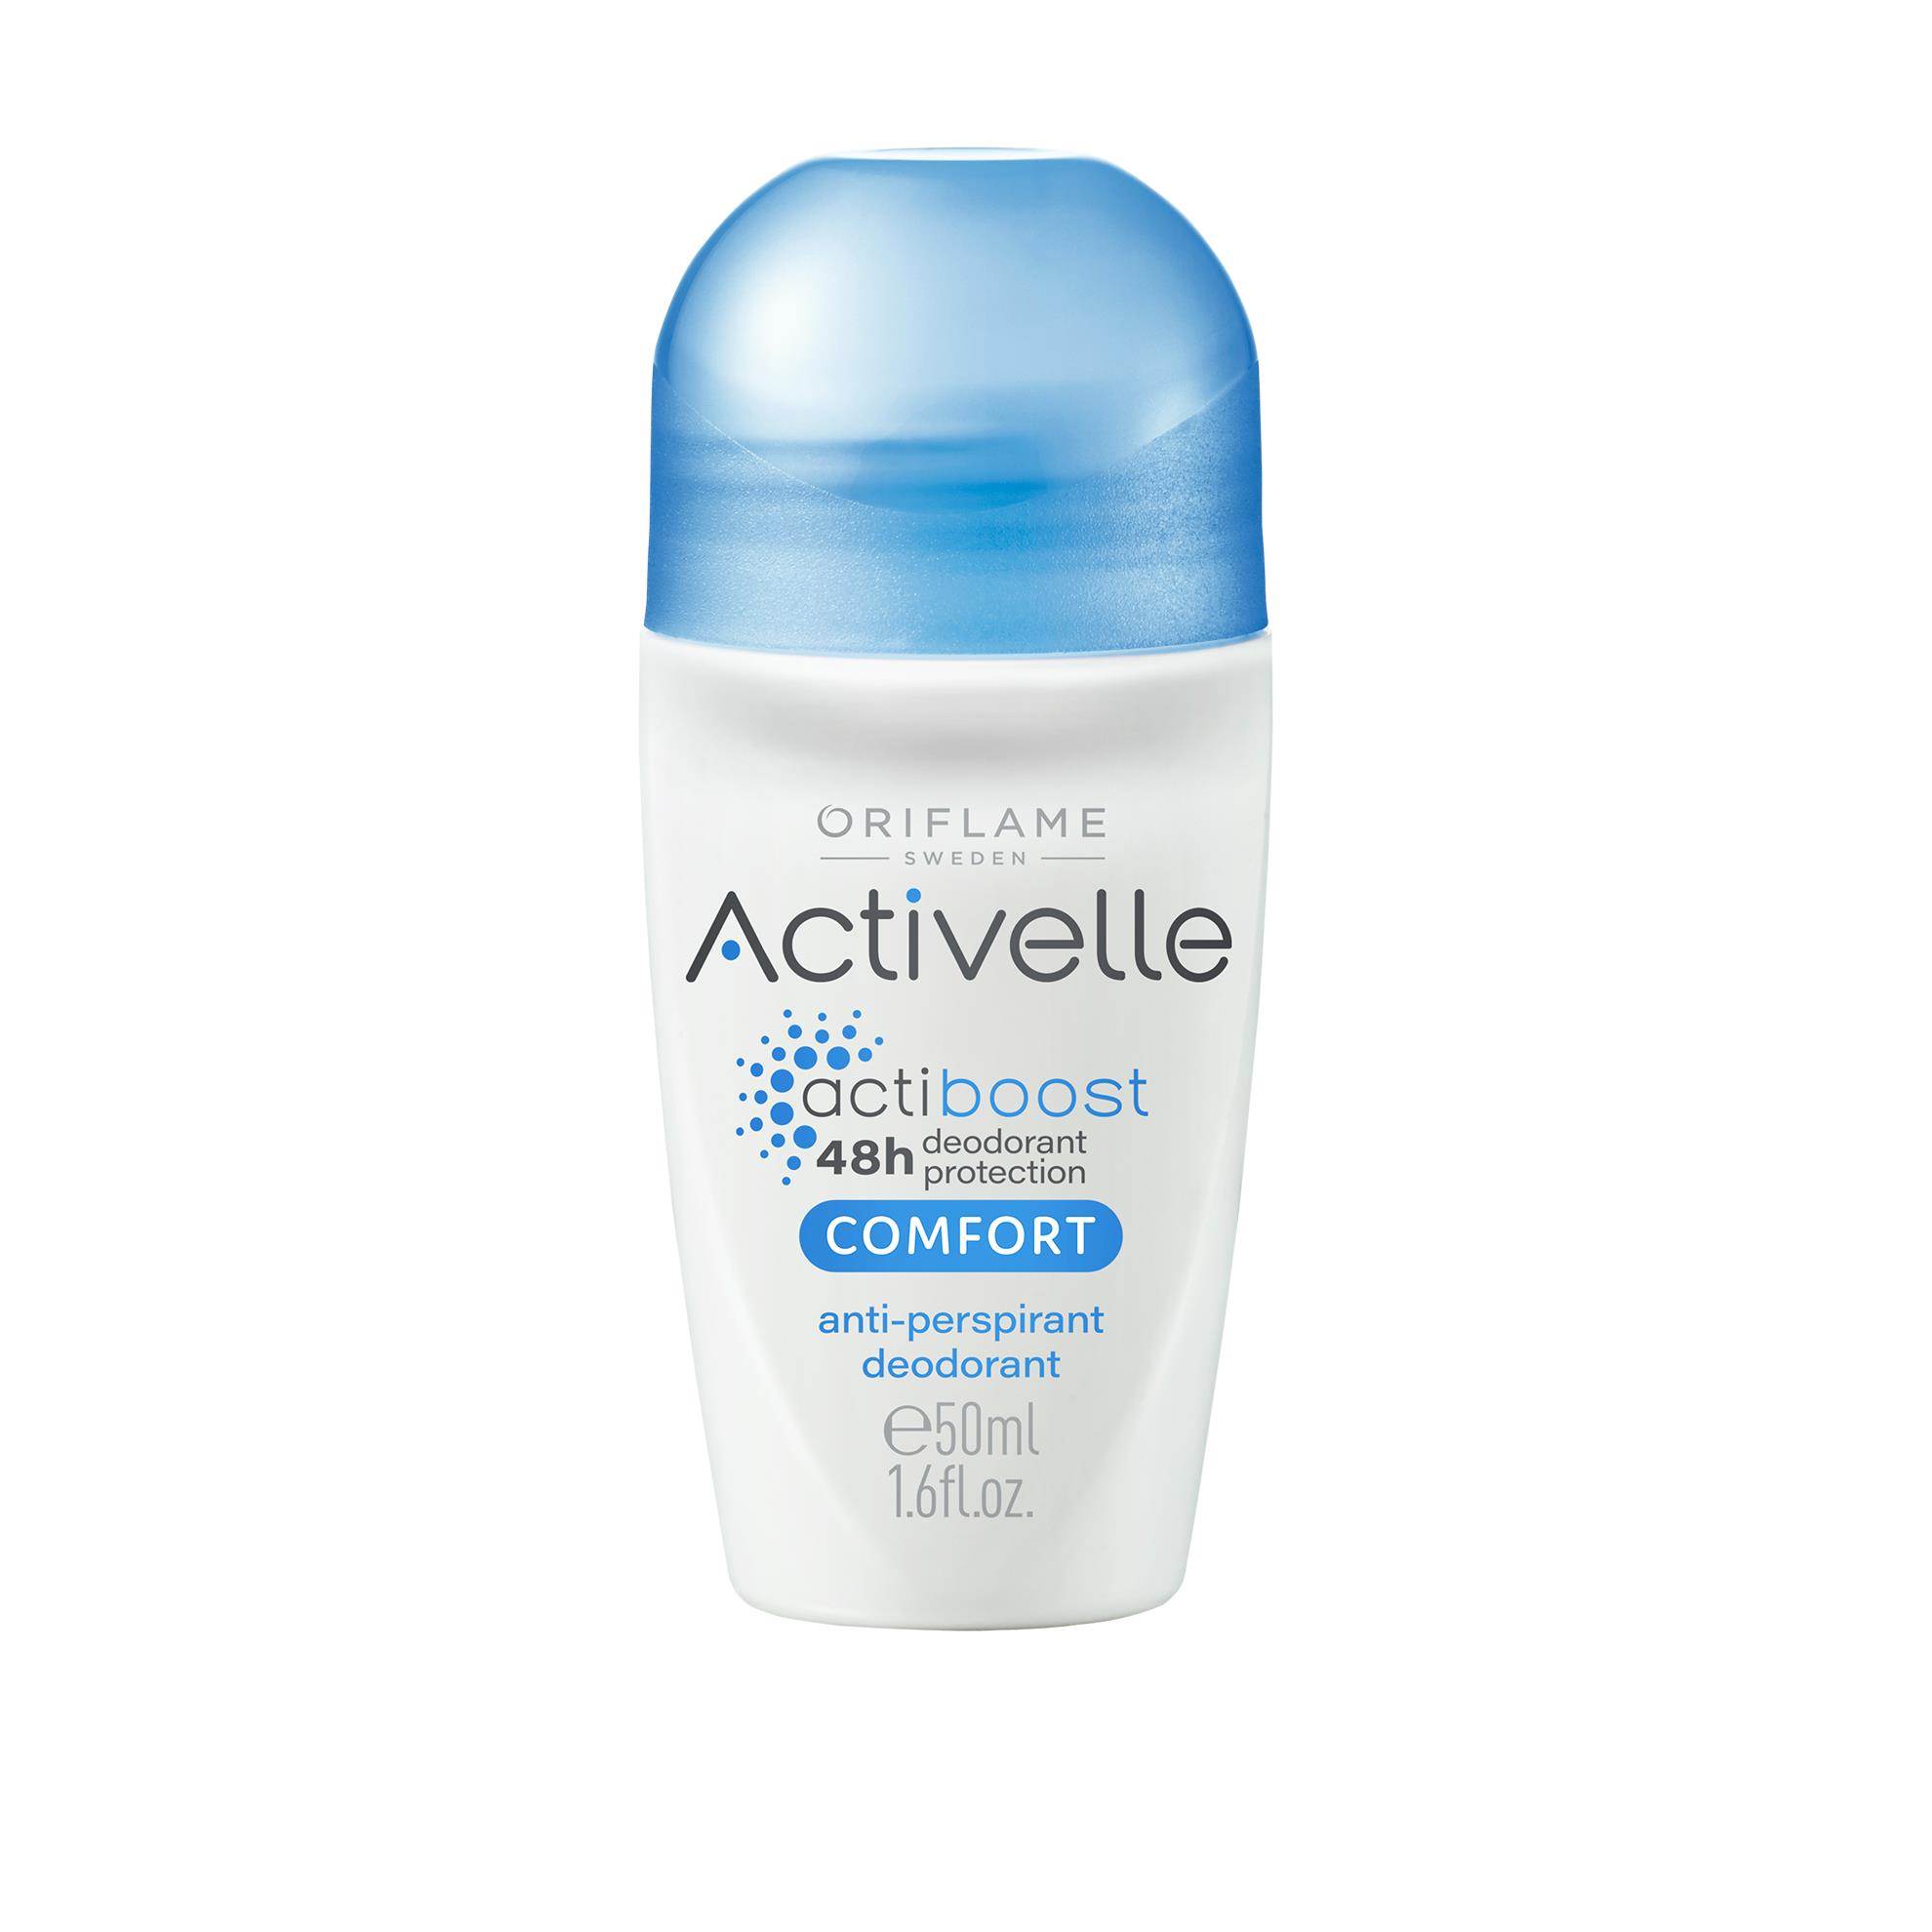 activelle-comfort-anti-perspirant-deodorant